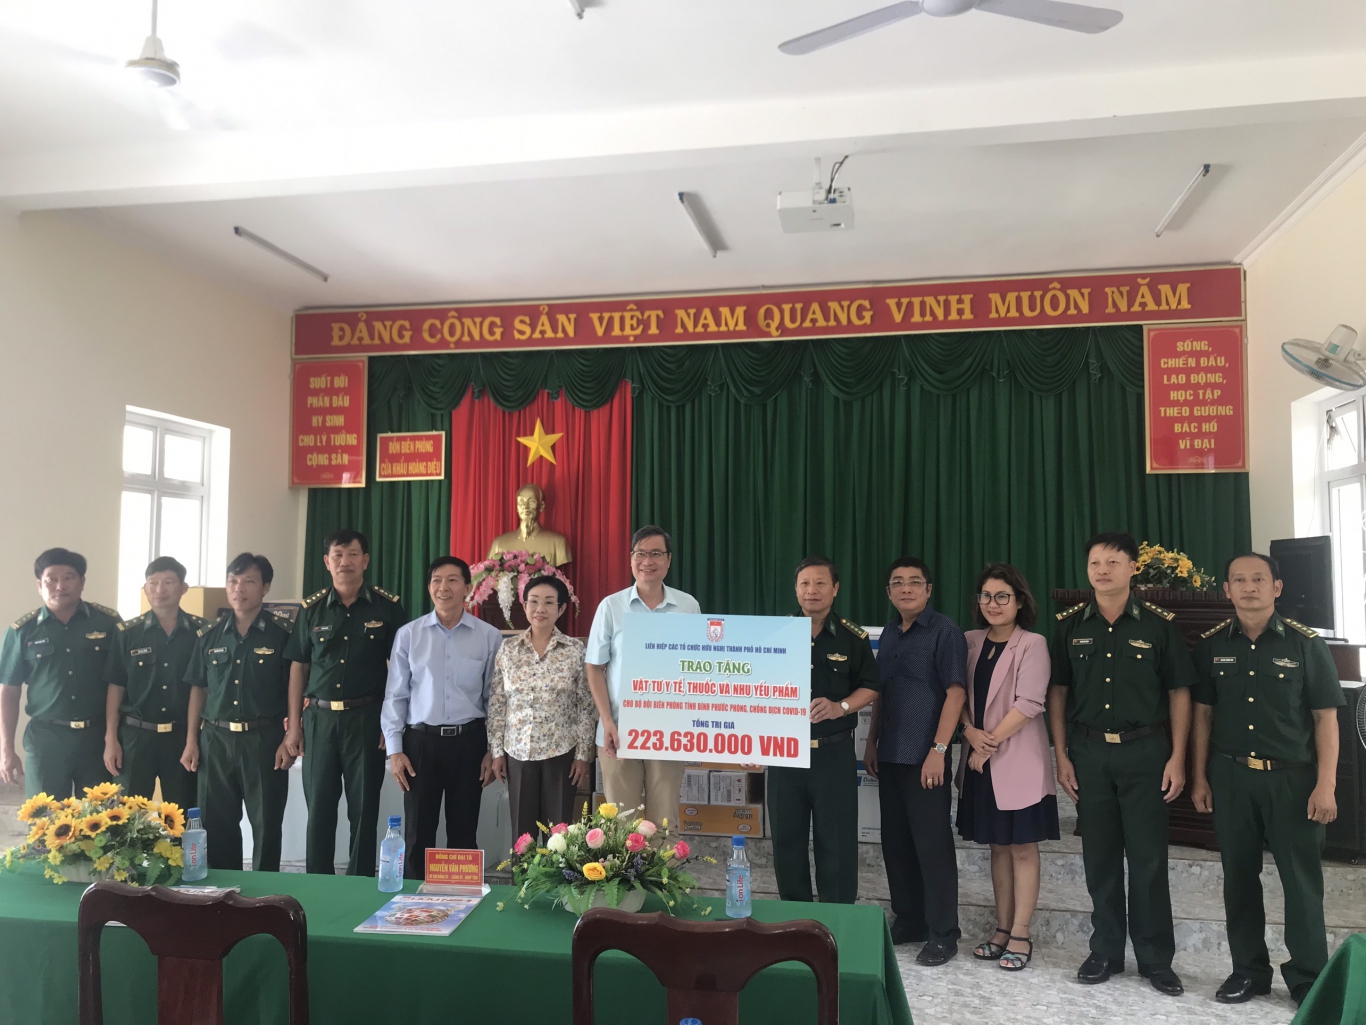 Chi đoàn, Công đoàn Sở Ngoại vụ tỉnh Bình Phước, Liên hiệp Các tổ chức hữu nghị thành phố Hồ Chí Minh đến thăm và tặng vật tư y tế cho bốn Đồn biên phòng trên địa bàn huyện Bù Đốp